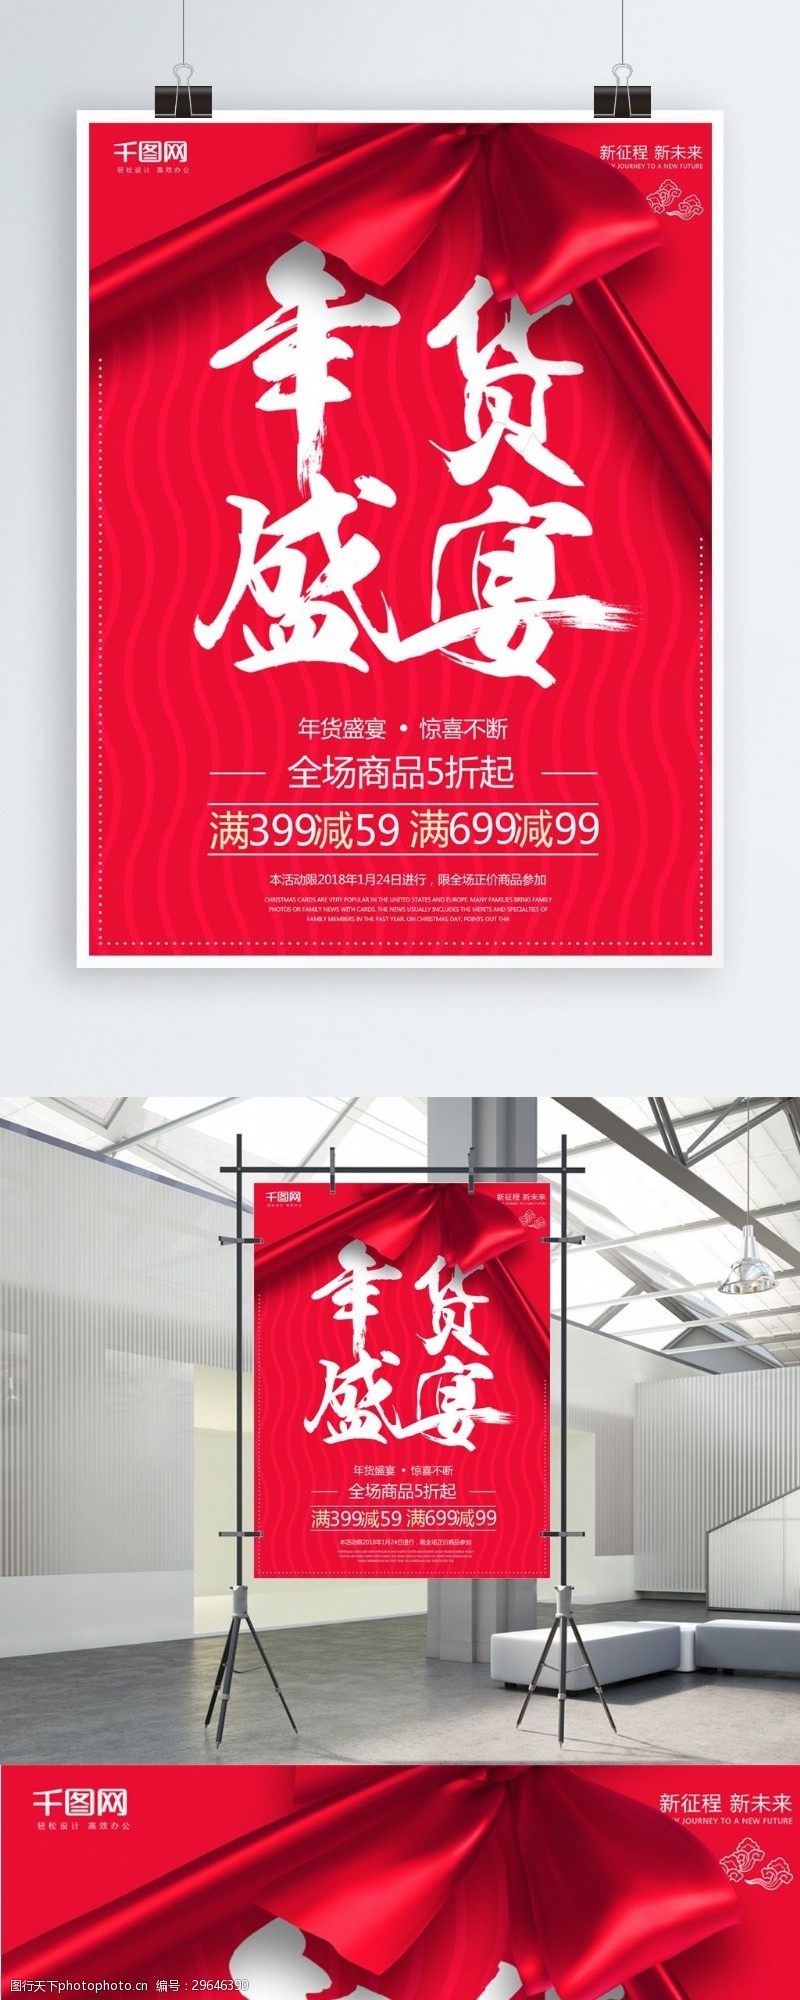 波浪线红色喜庆年货盛宴促销海报设计psd模板